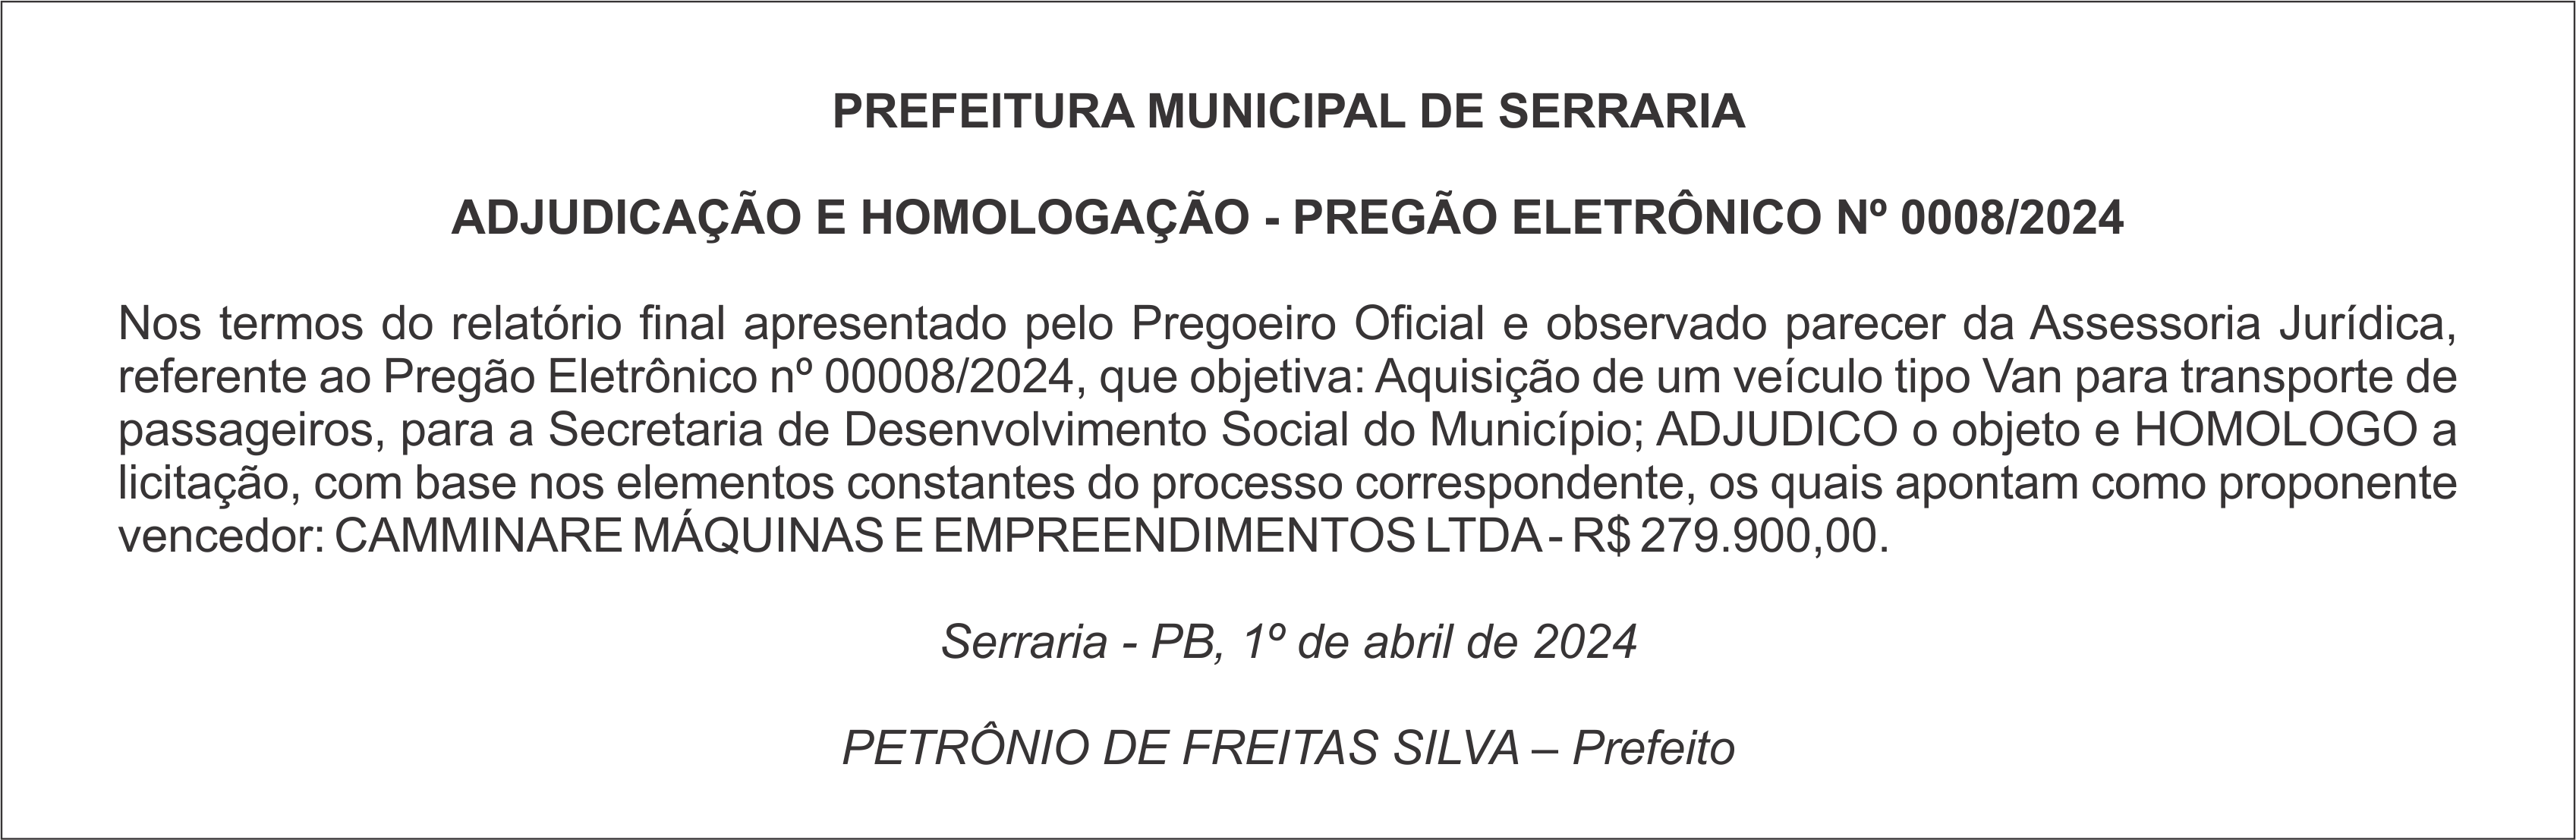 PREFEITURA MUNICIPAL DE SERRARIA – ADJUDICAÇÃO E HOMOLOGAÇÃO – PREGÃO ELETRÔNICO Nº 0008/2024